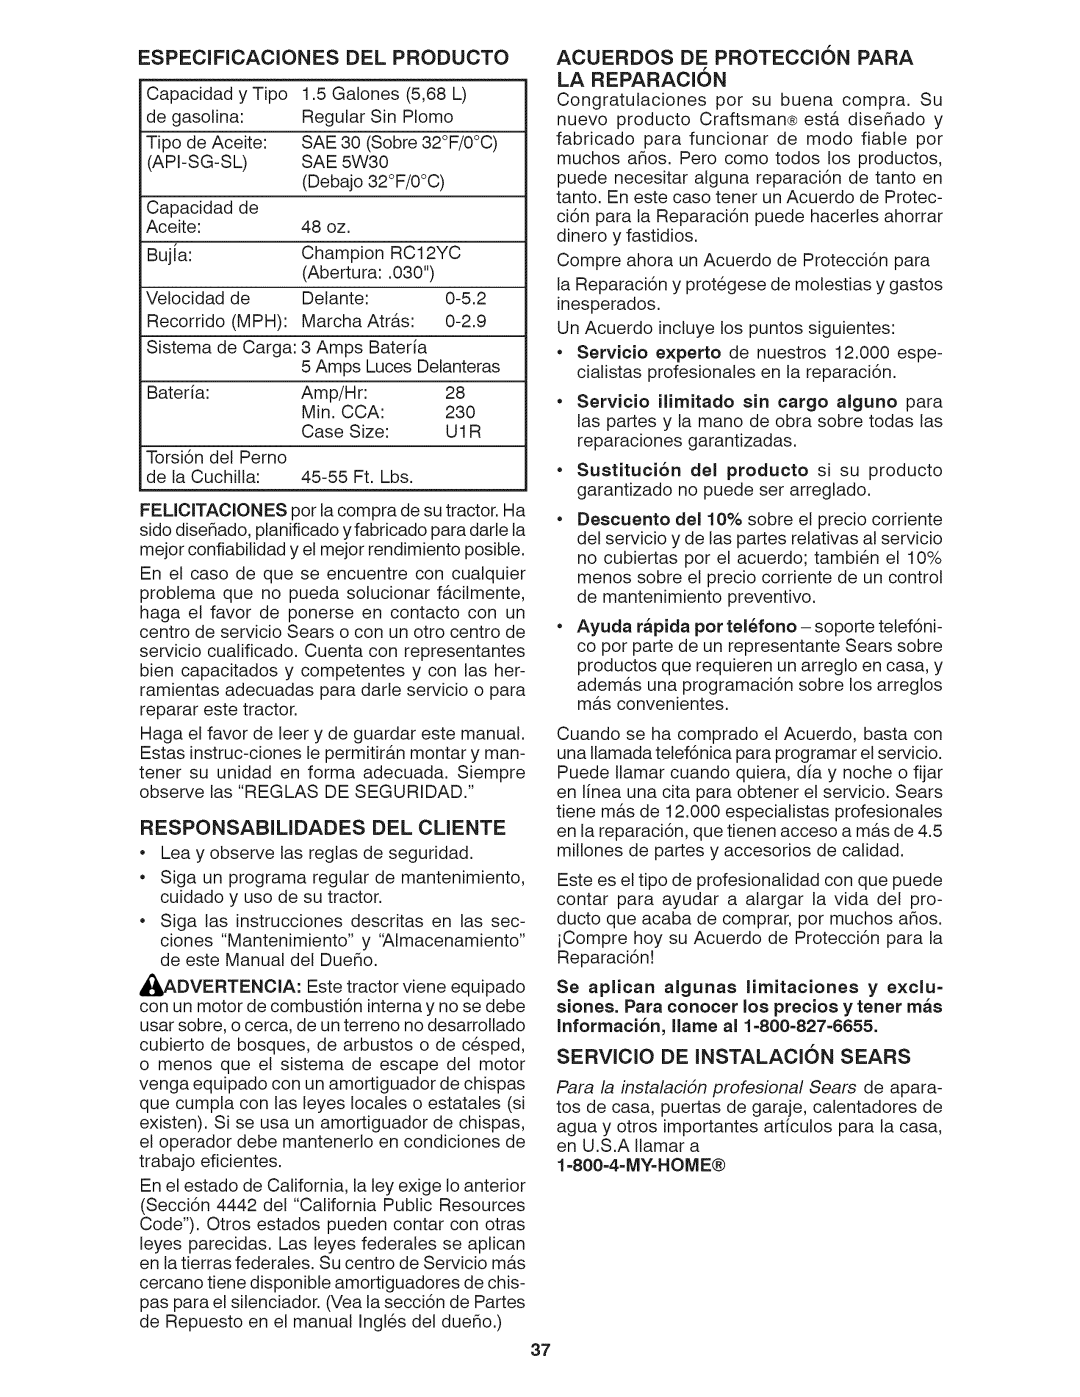 Craftsman 917.28035 owner manual Especificacionesdel Producto, LA REPARACI6N 